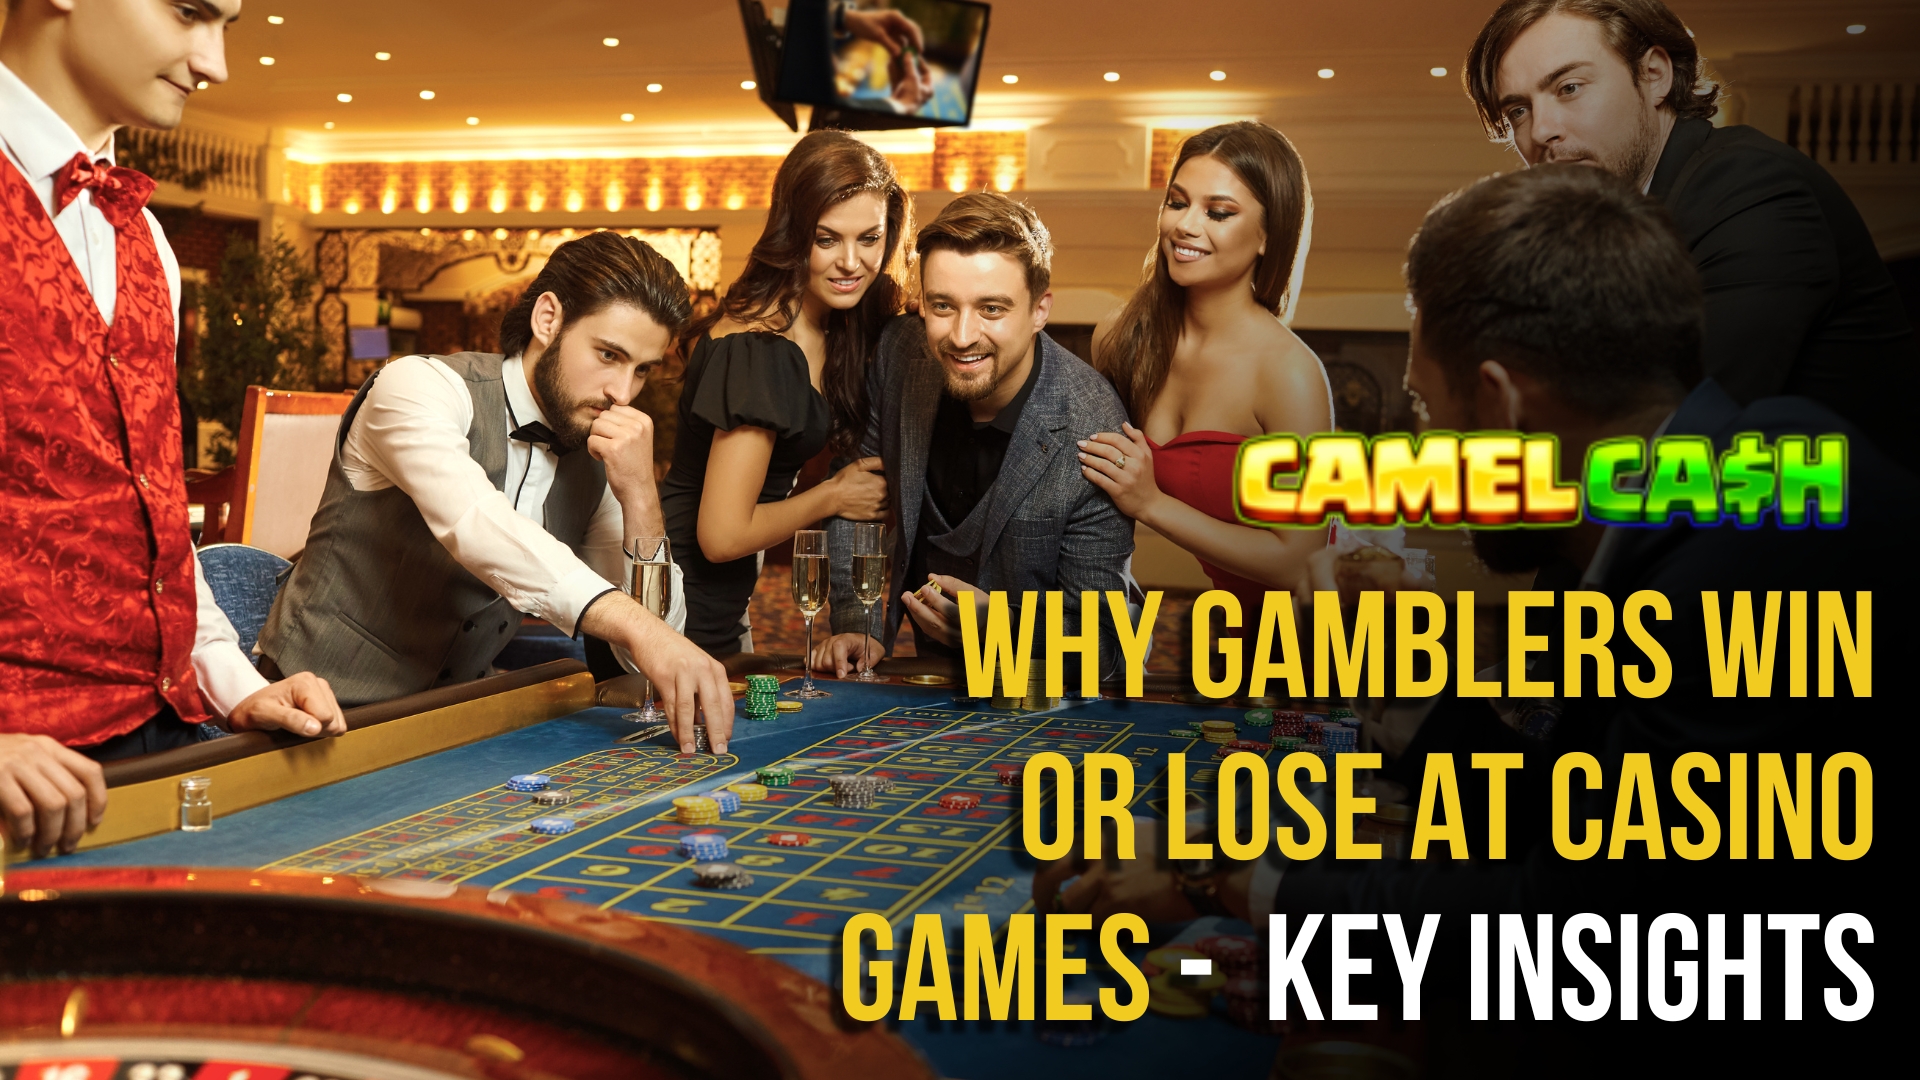 Gamblers win or lose